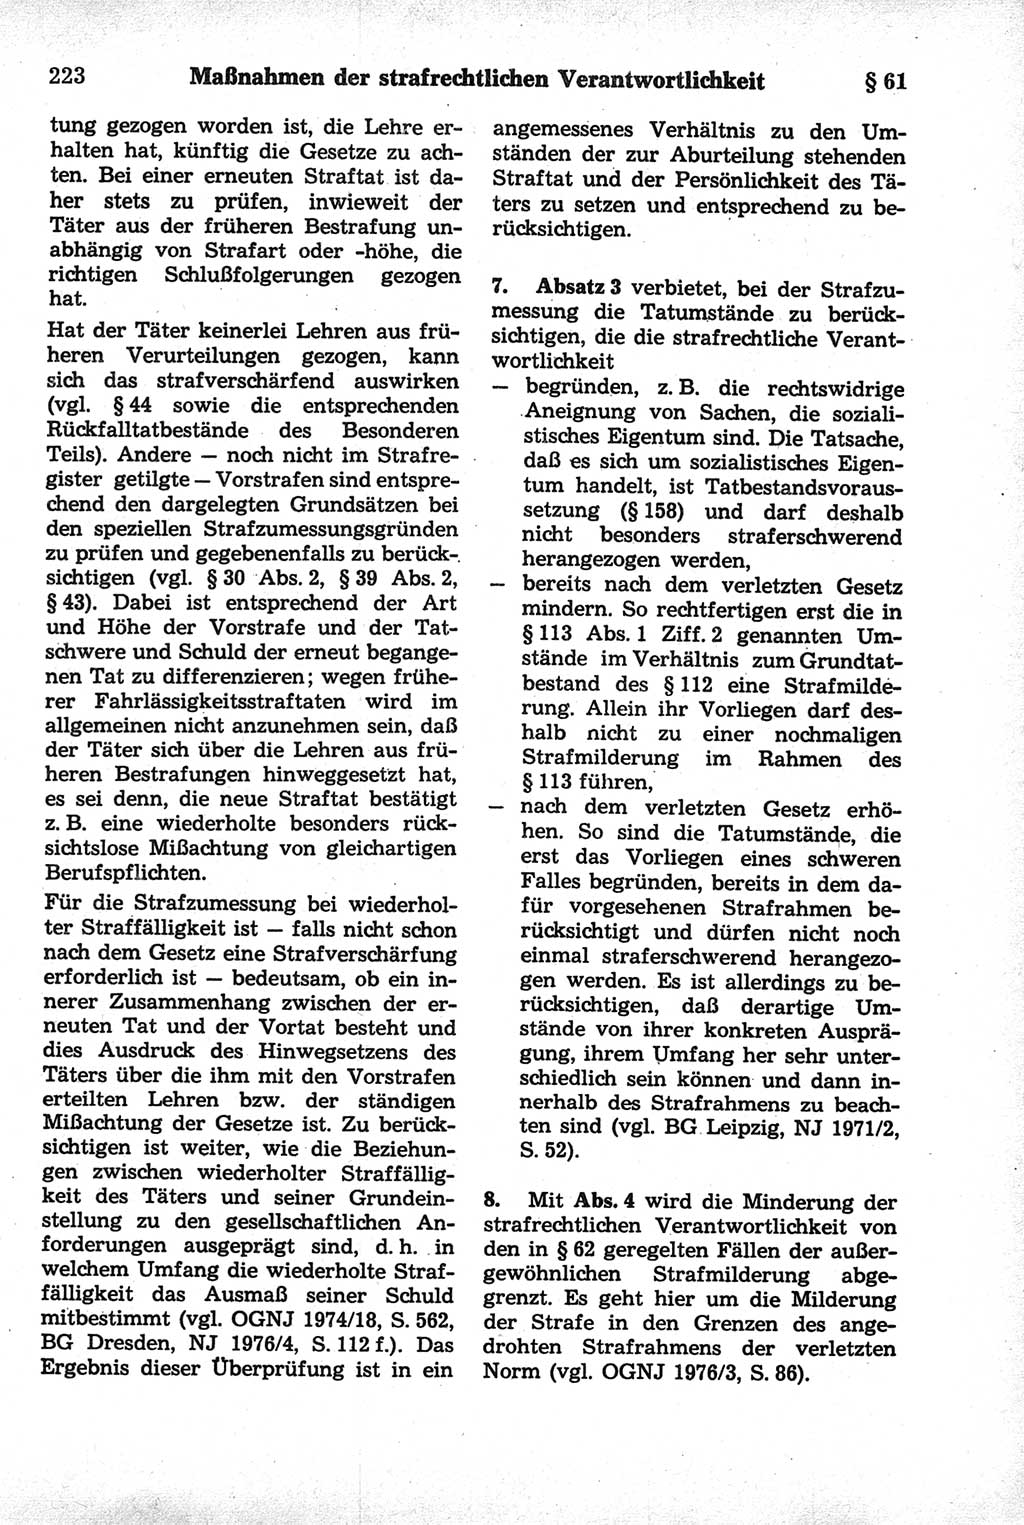 Strafrecht der Deutschen Demokratischen Republik (DDR), Kommentar zum Strafgesetzbuch (StGB) 1981, Seite 223 (Strafr. DDR Komm. StGB 1981, S. 223)